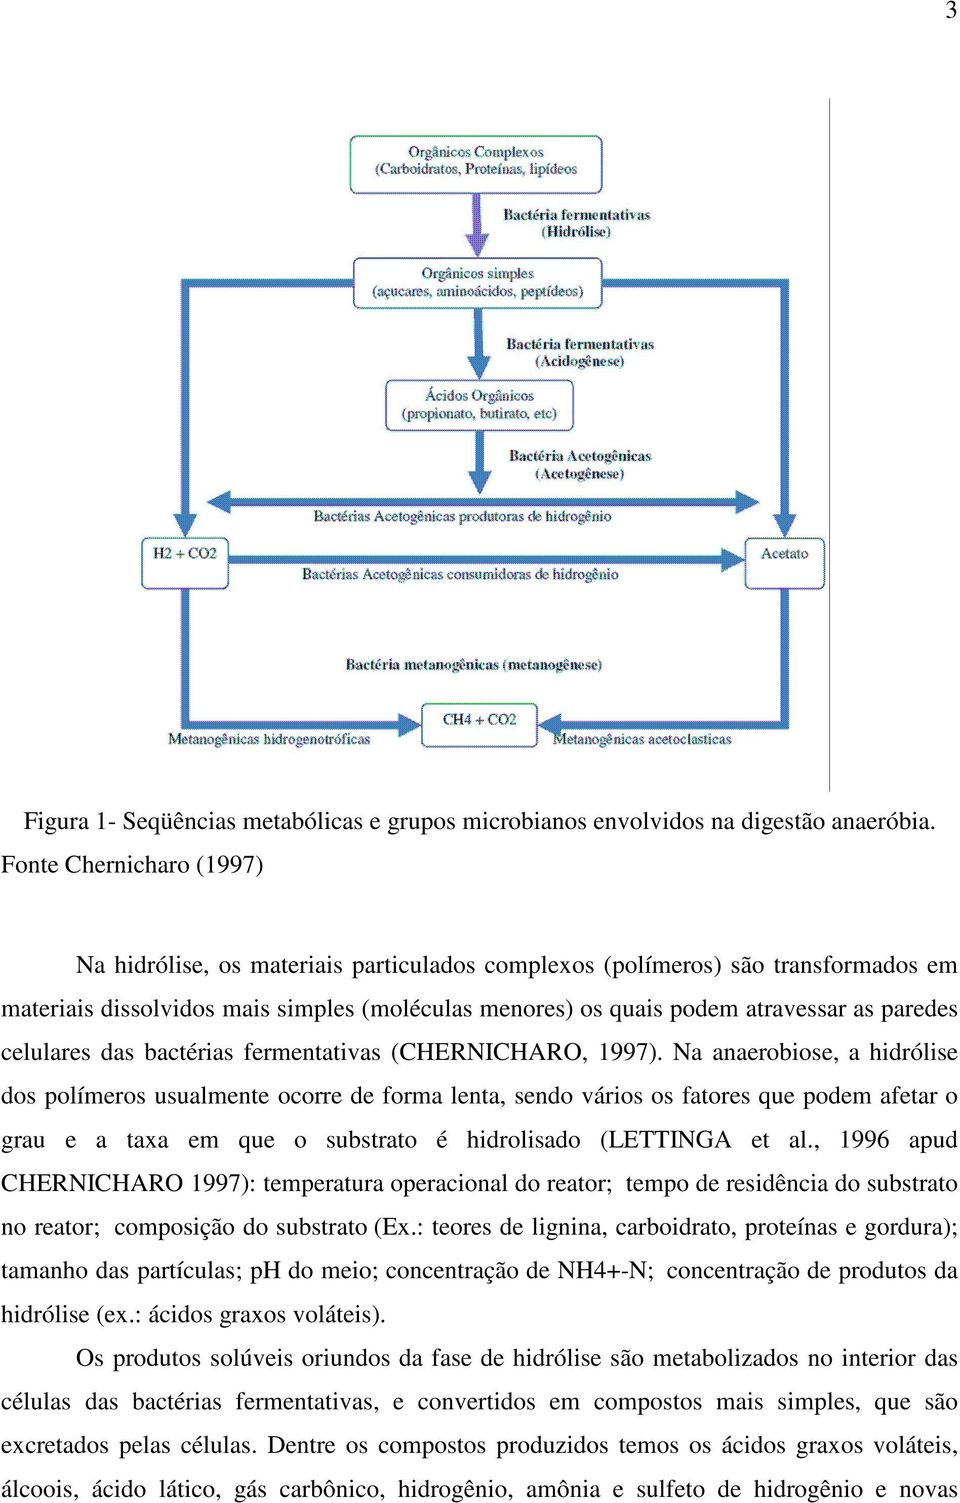 celulares das bactérias fermentativas (CHERNICHARO, 1997).